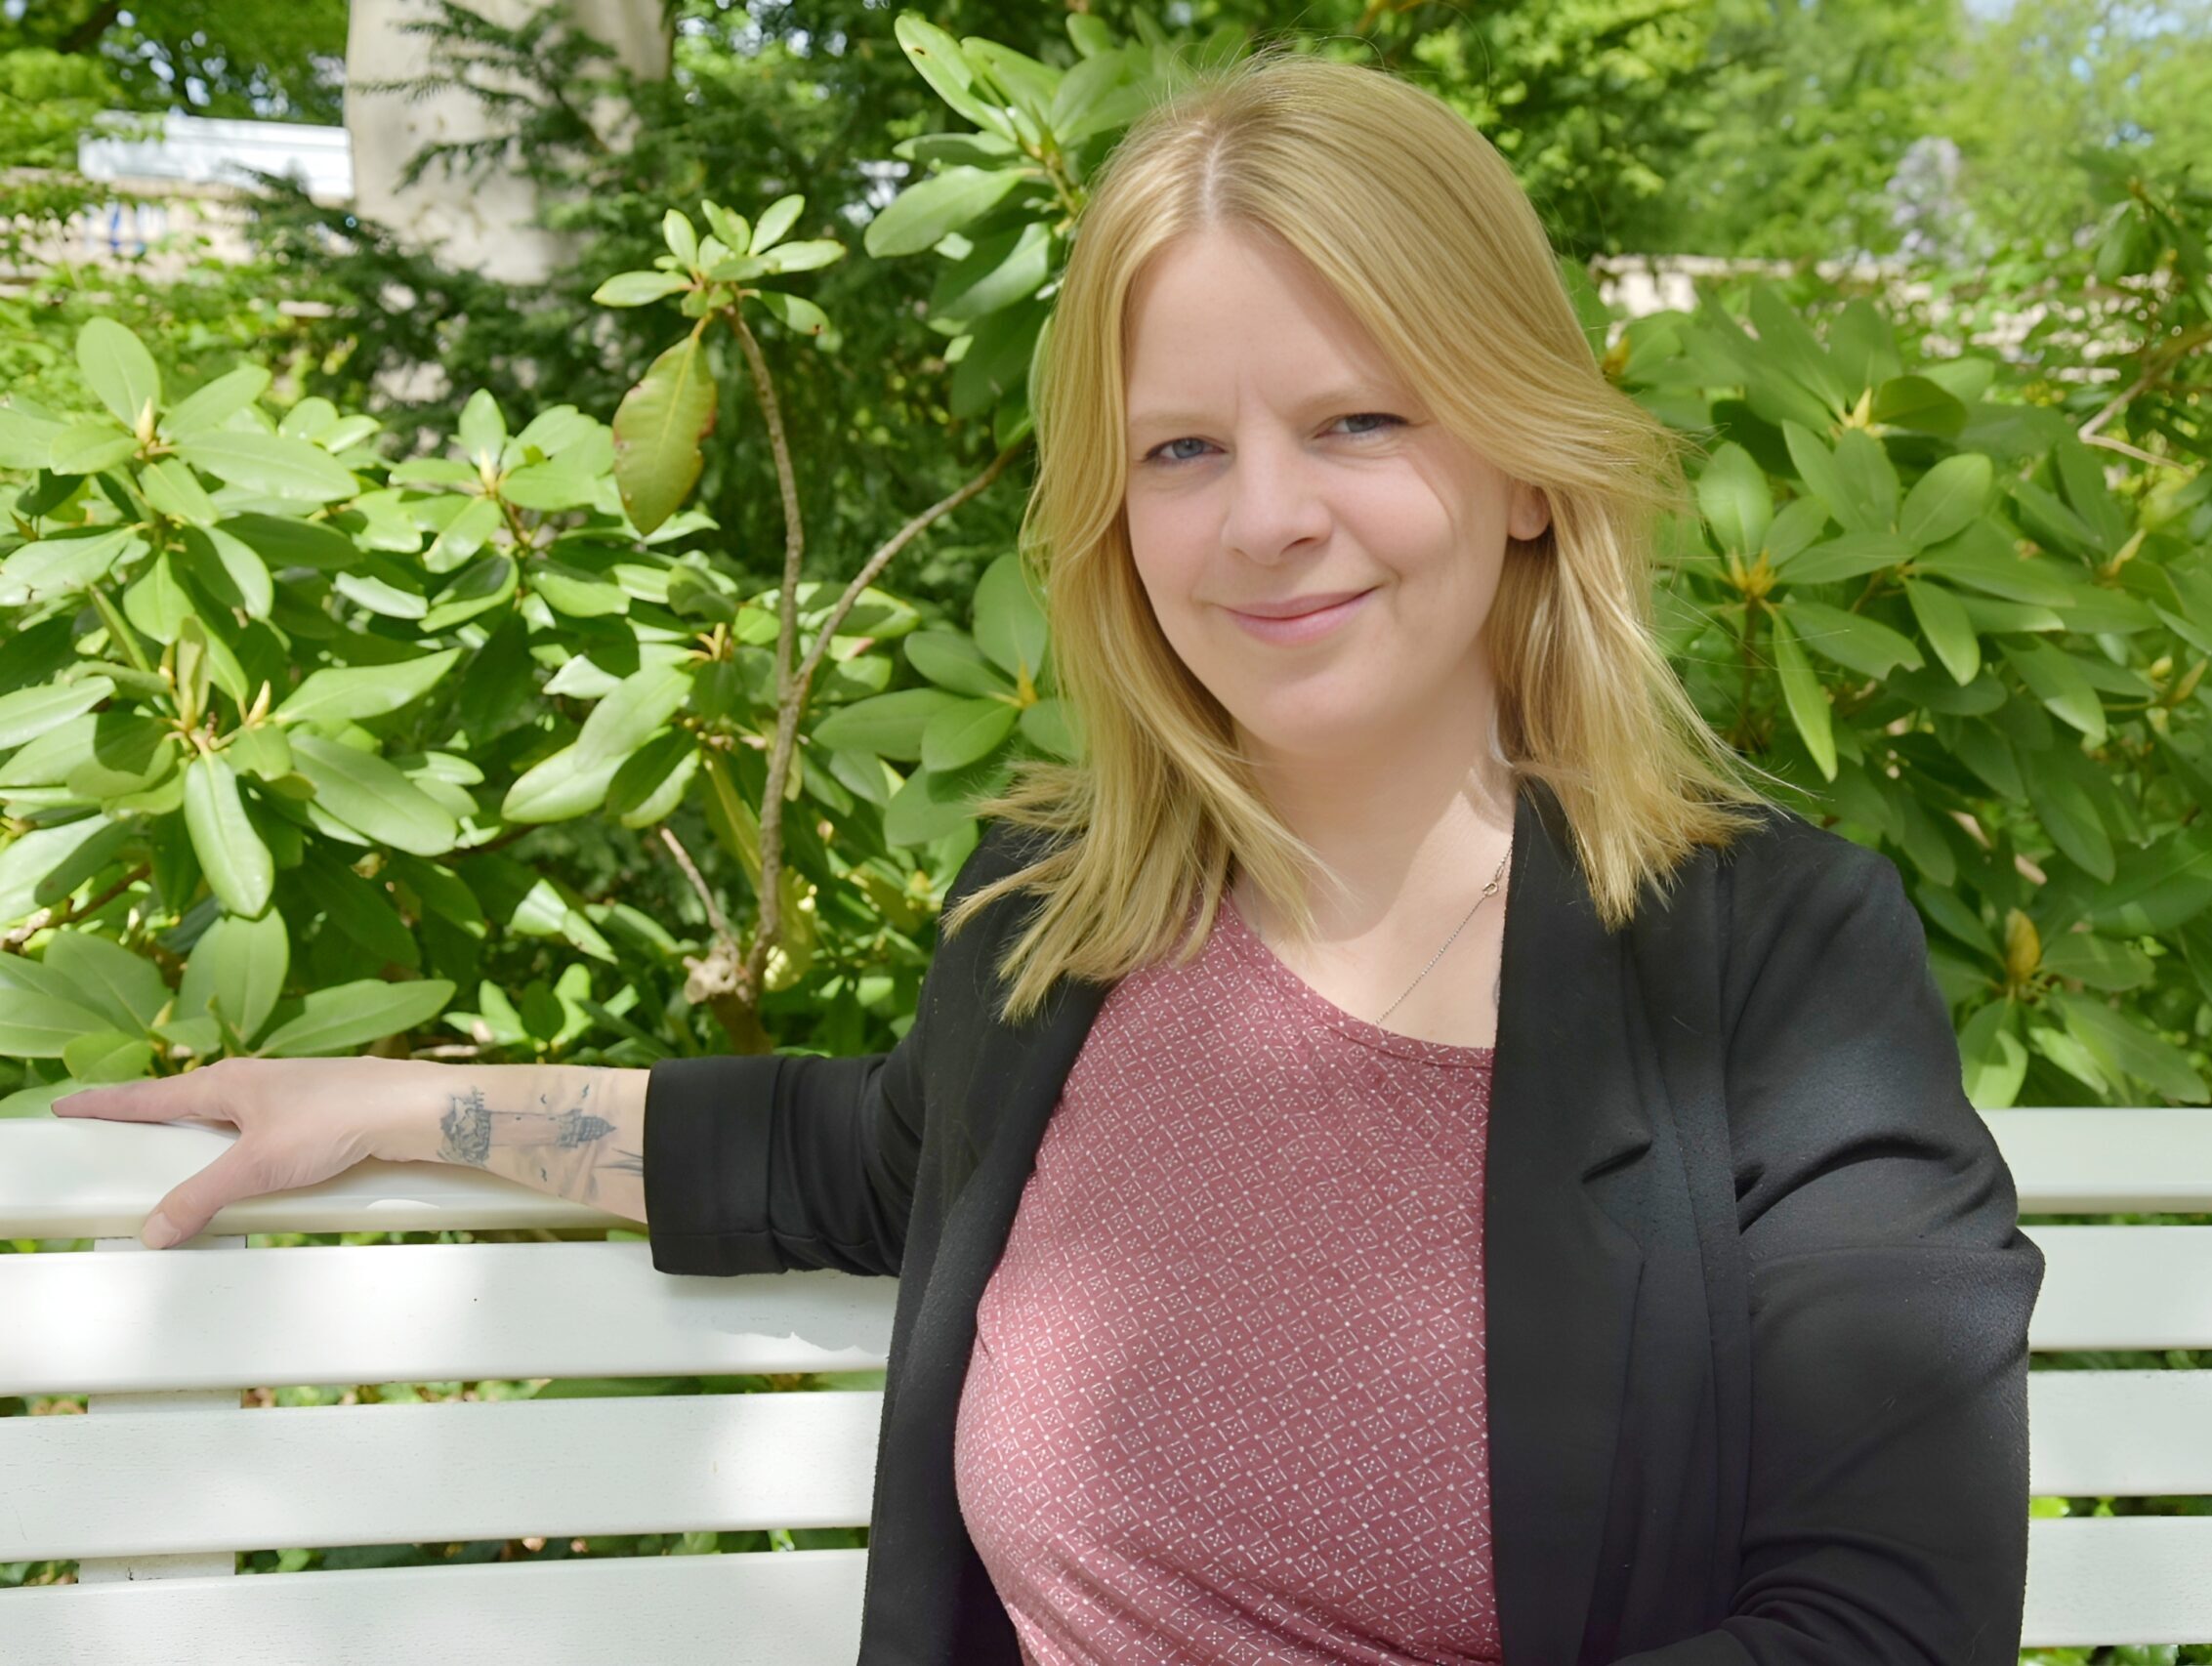 Entspannt im Amt: Resilienztraining für Behörden und Öffentlichen Dienst, Profilbild Julie Haußmann